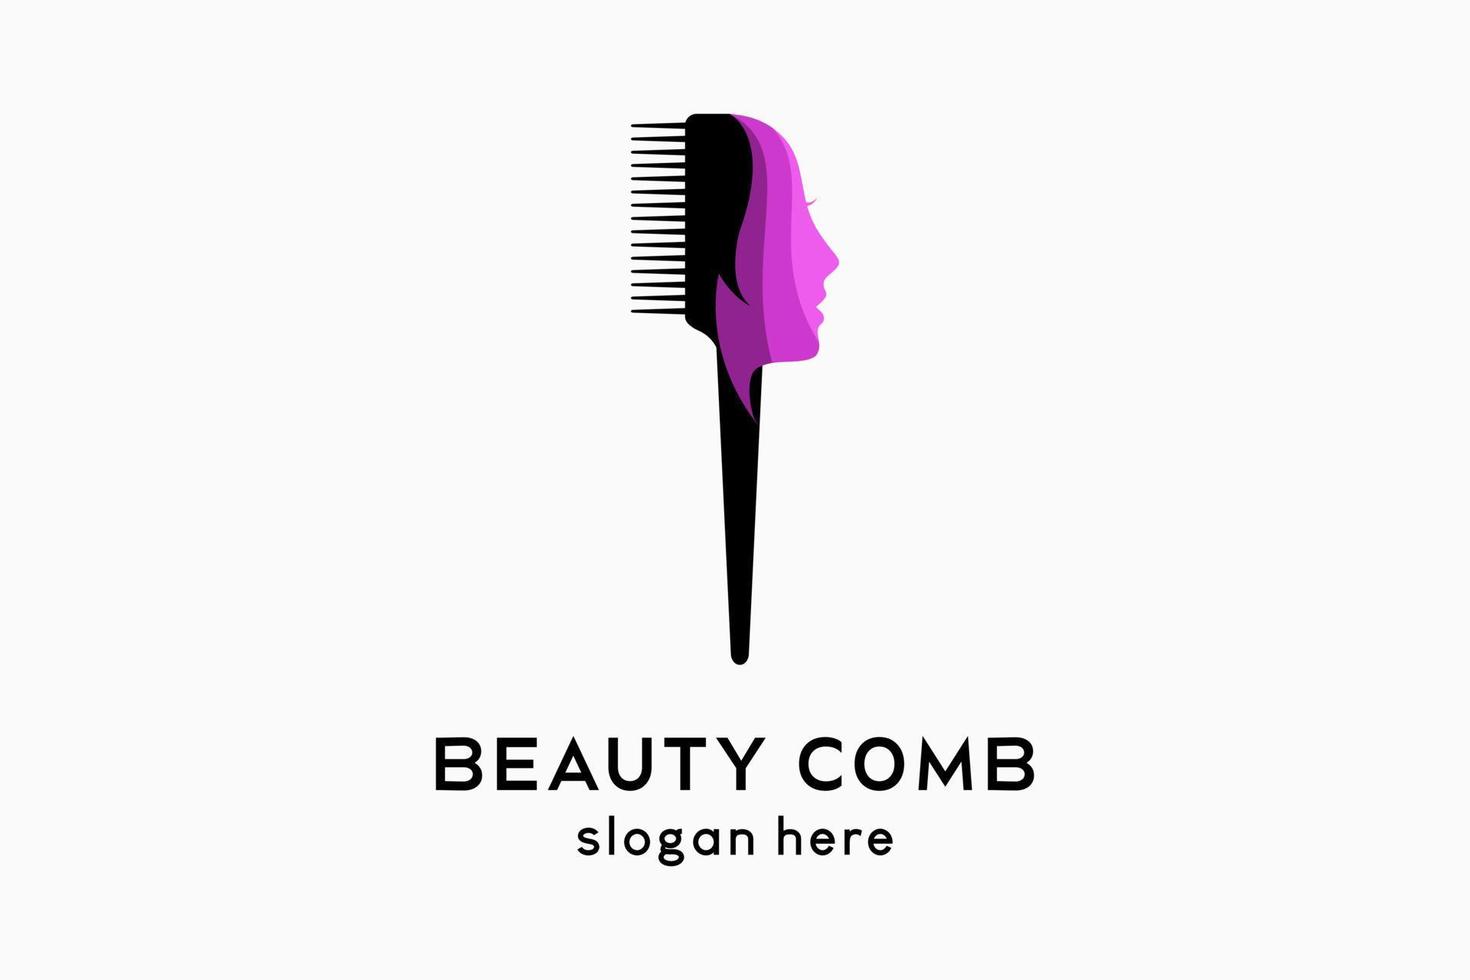 la conception du logo du peigne se fond avec le visage de la femme dans un concept créatif, un logo de salon de coiffure ou un vecteur de beauté